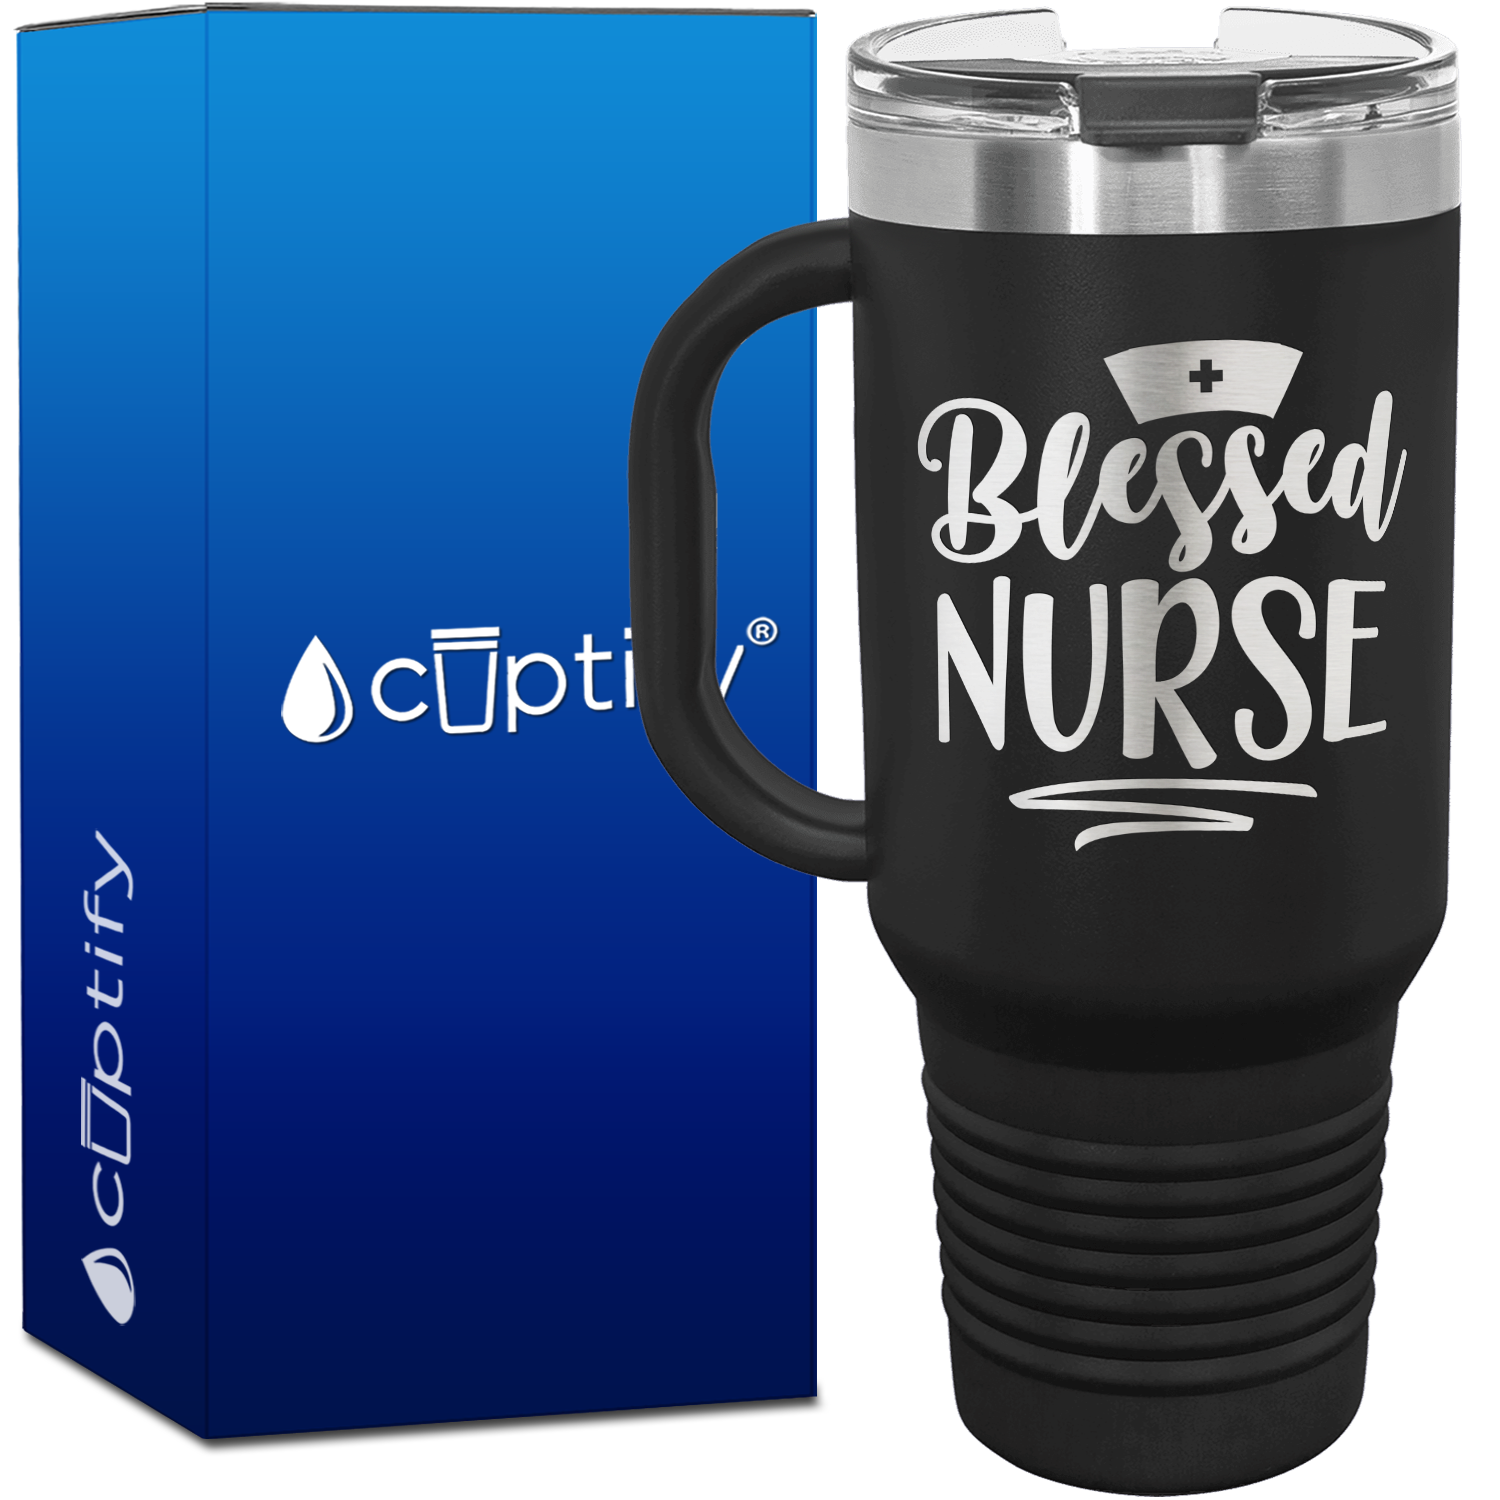 Blessed Nurse 40oz Nurse Travel Mug